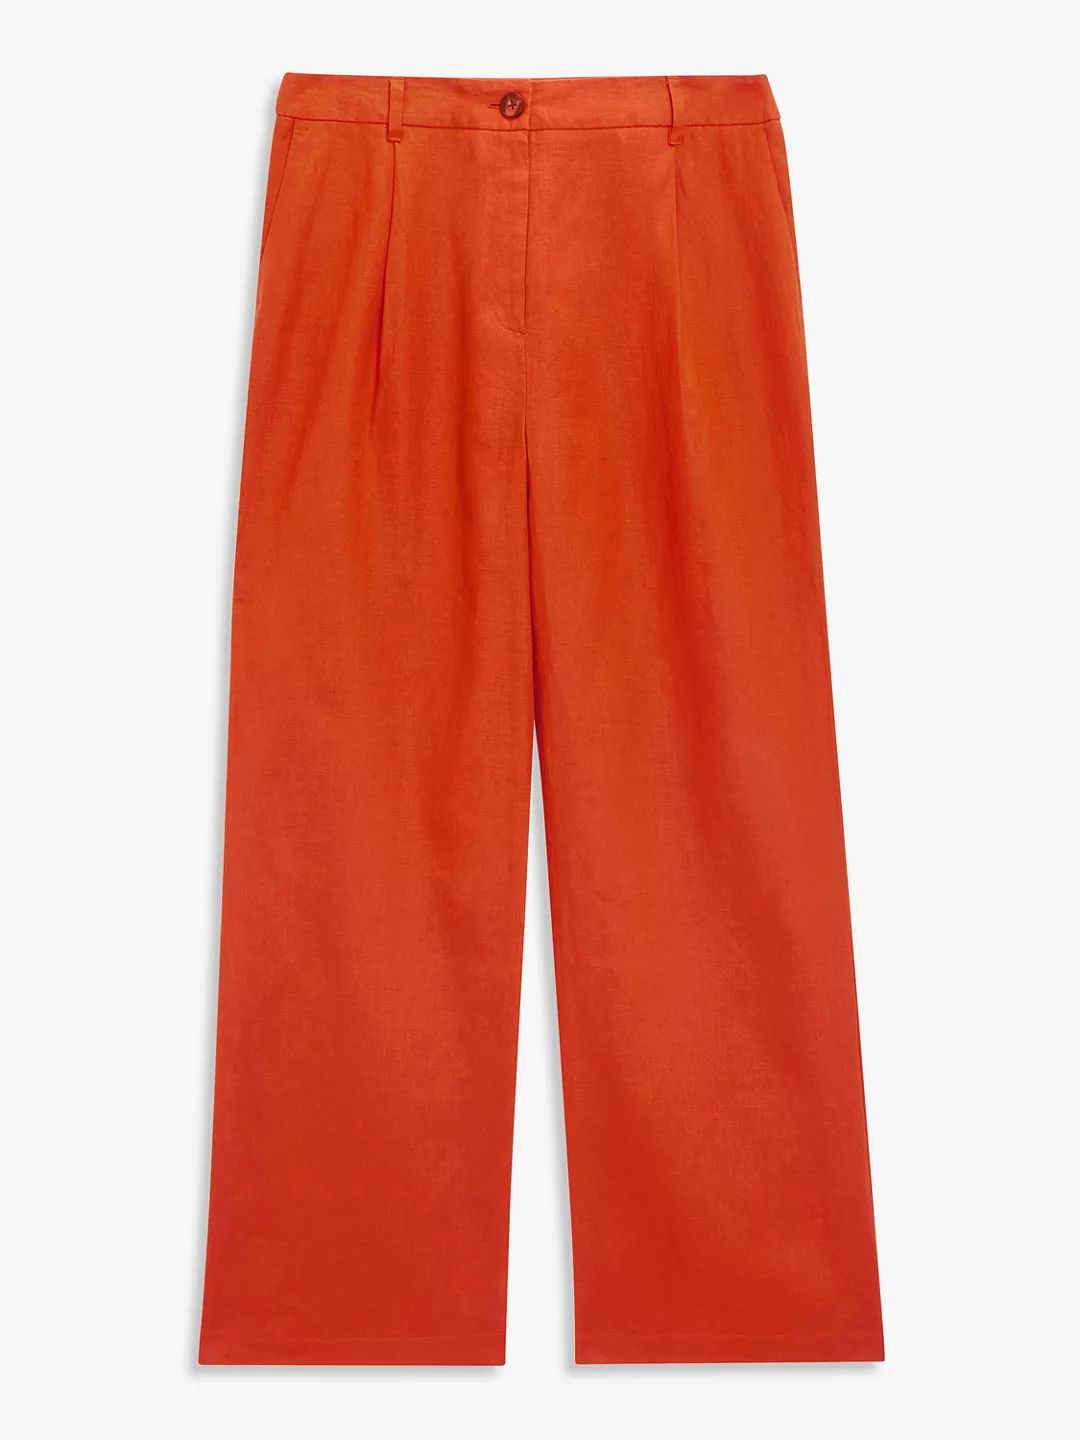 John Lewis Linen Trousers, Orange | John Lewis (UK)